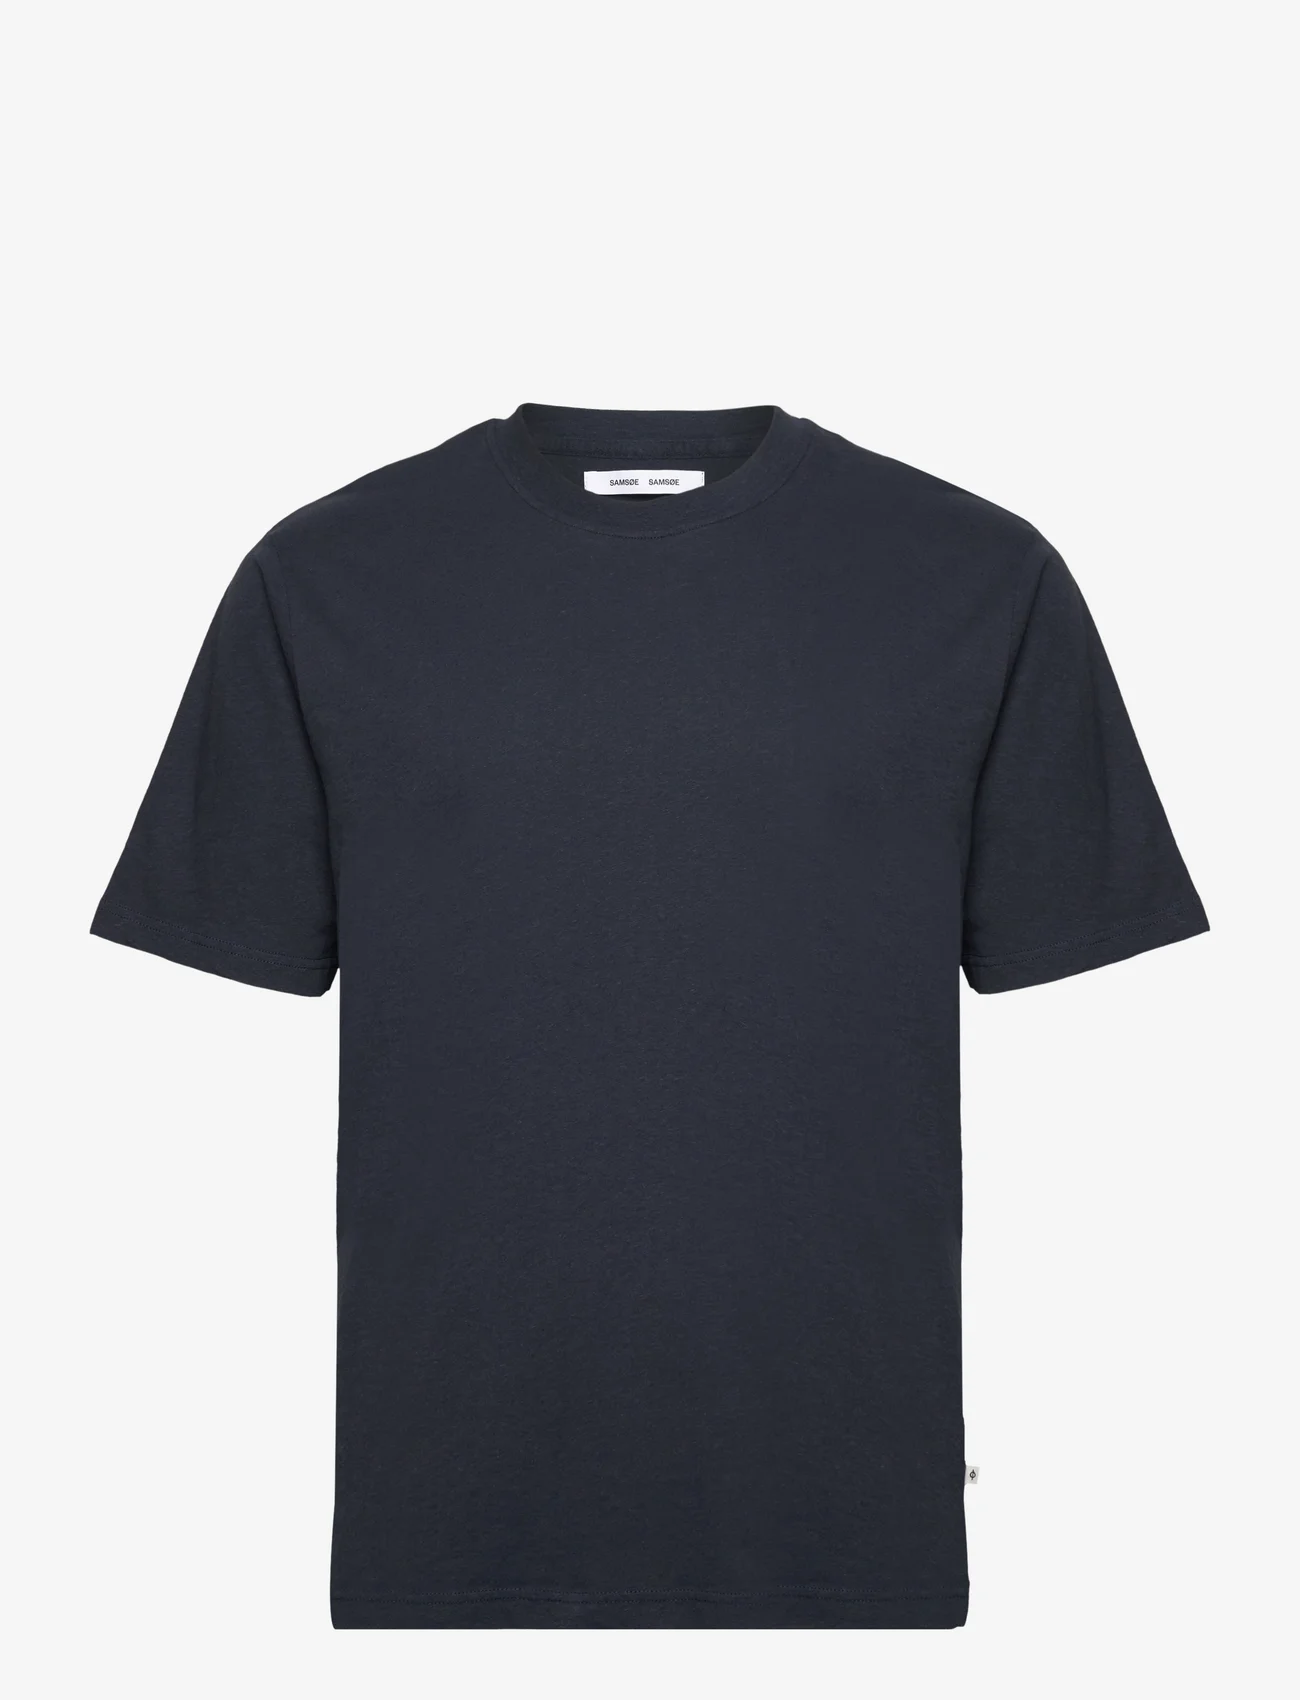 Samsøe Samsøe - Saadrian t-shirt 15099 - basic skjortor - salute - 0